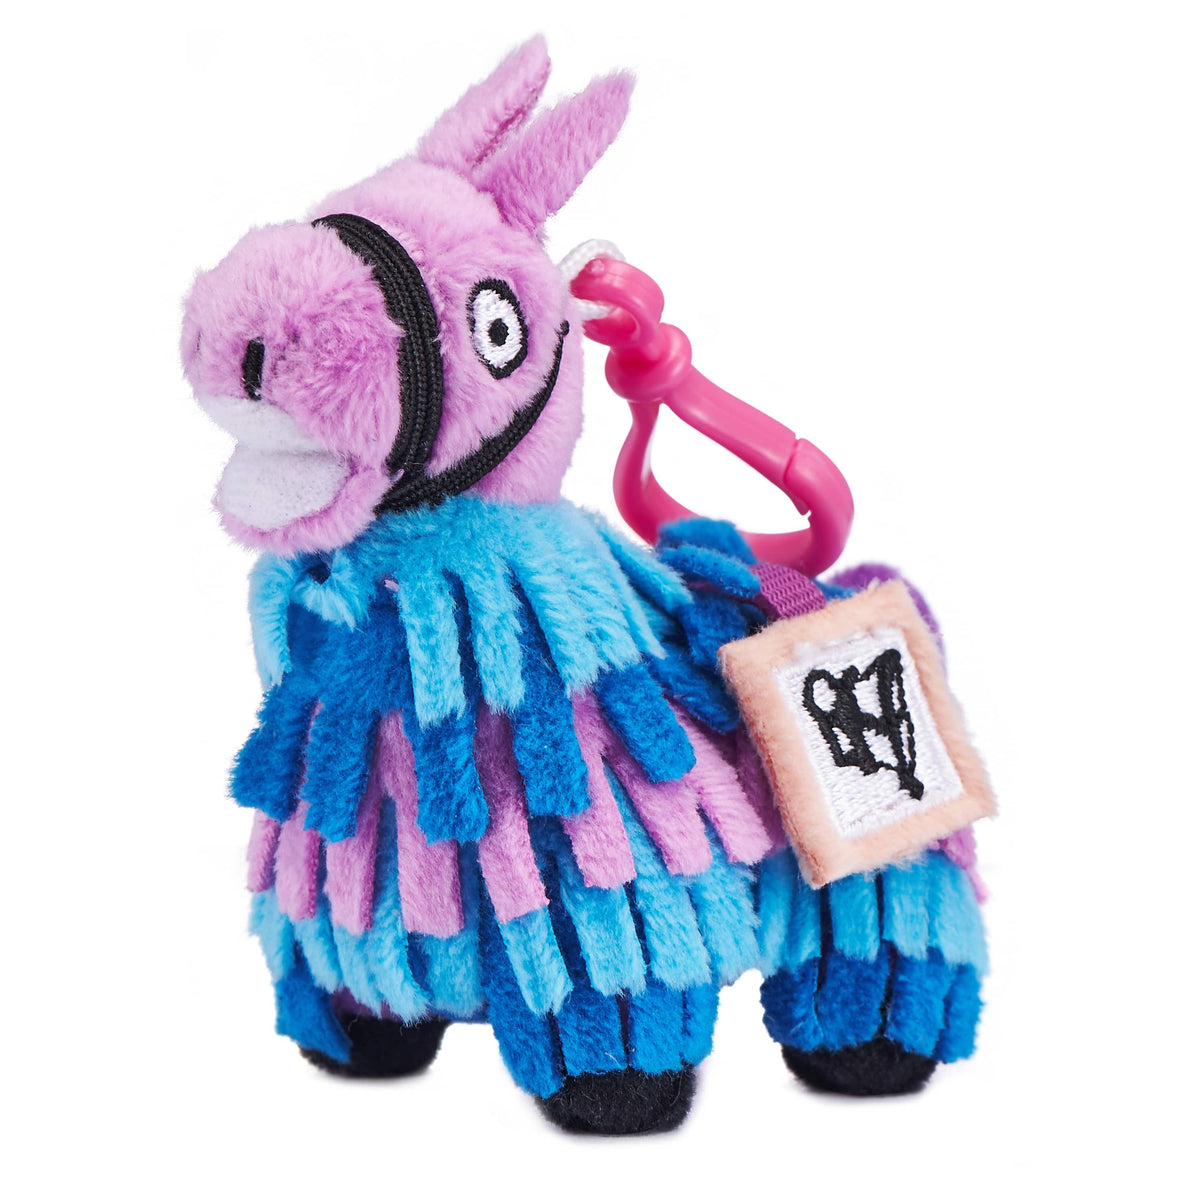 stuffed loot llama